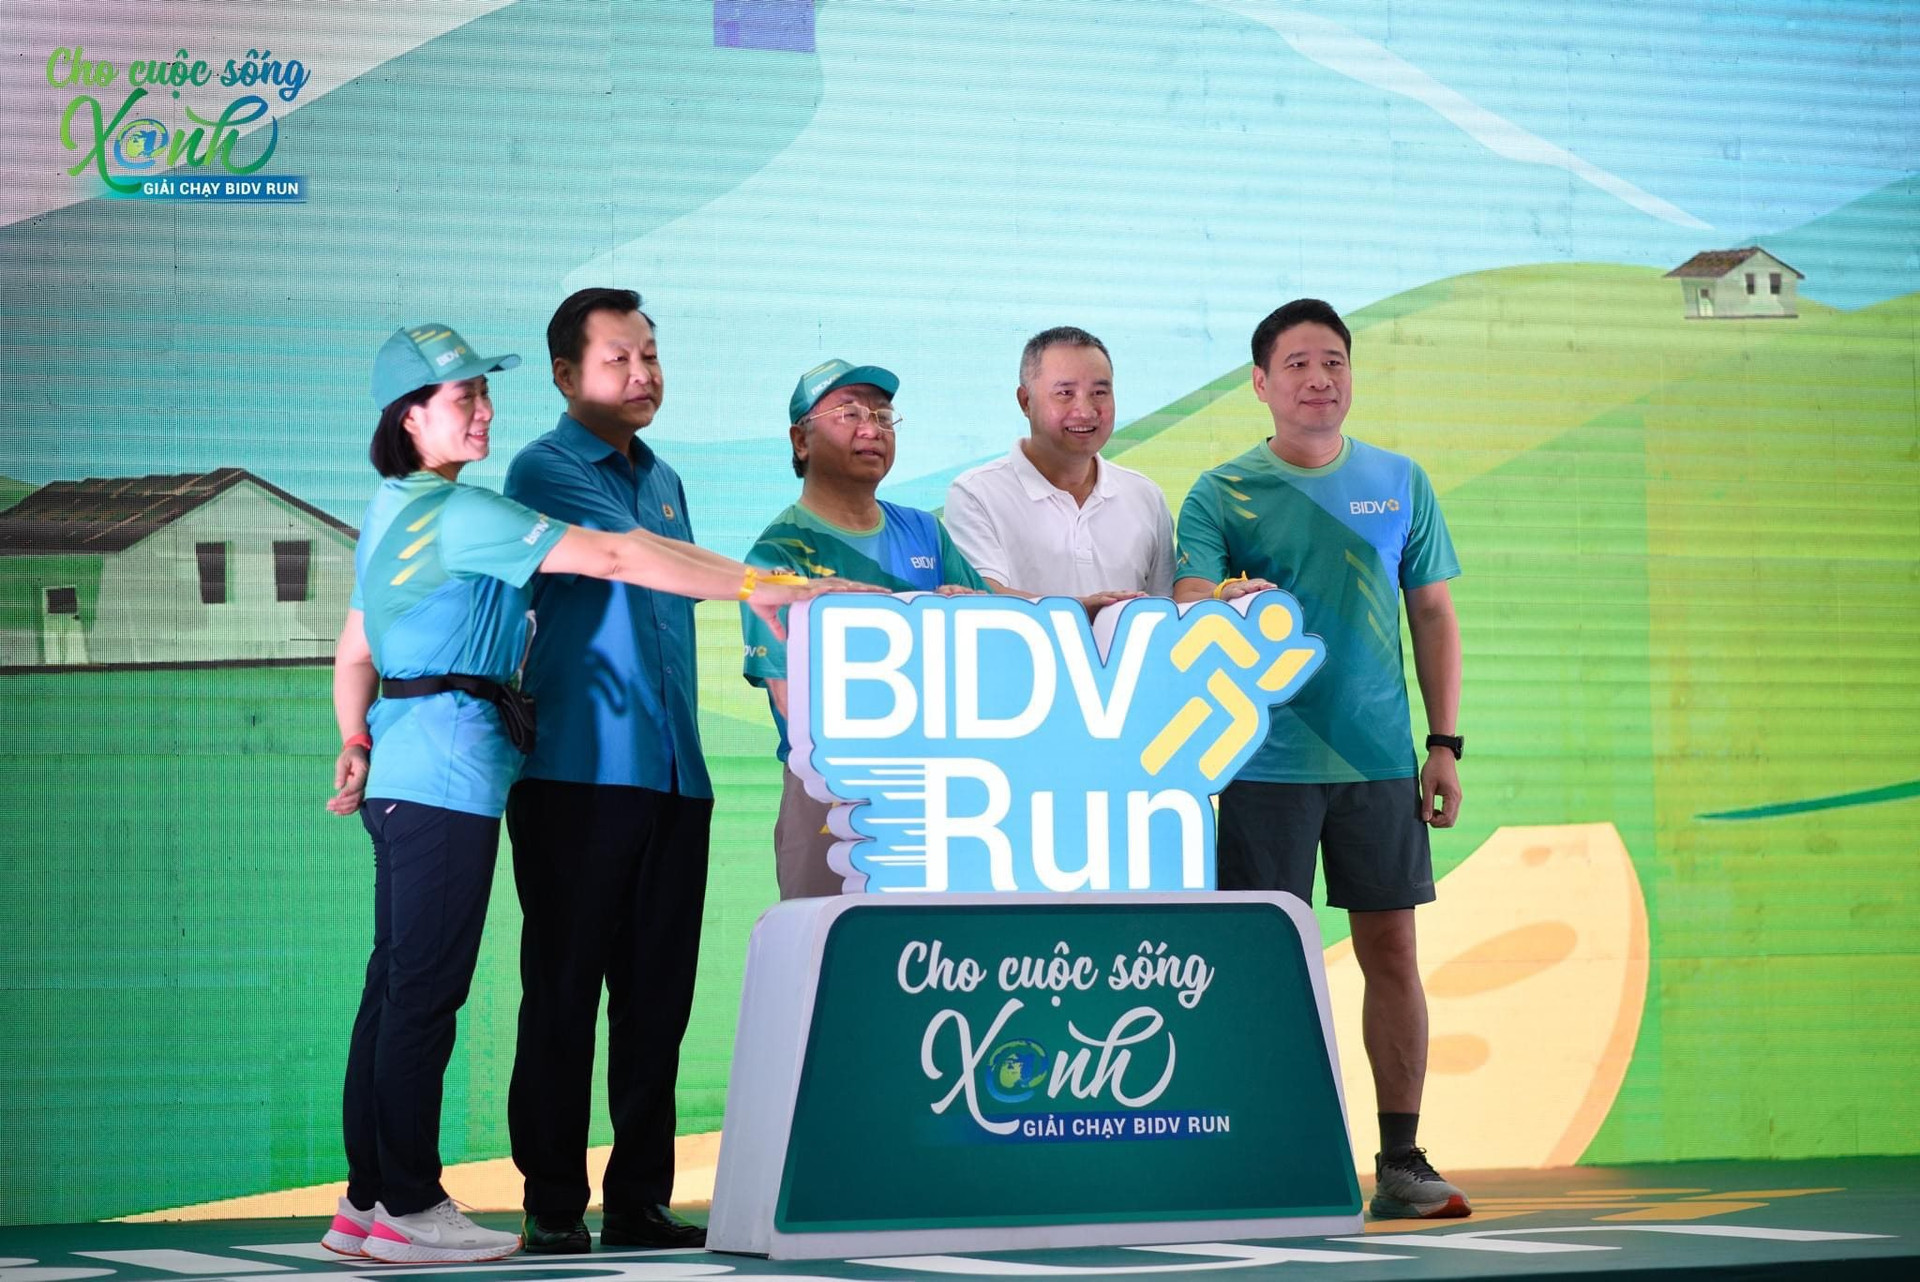 BIDV khởi động giải chạy BIDV Run - cho cuộc sống xanh 2023